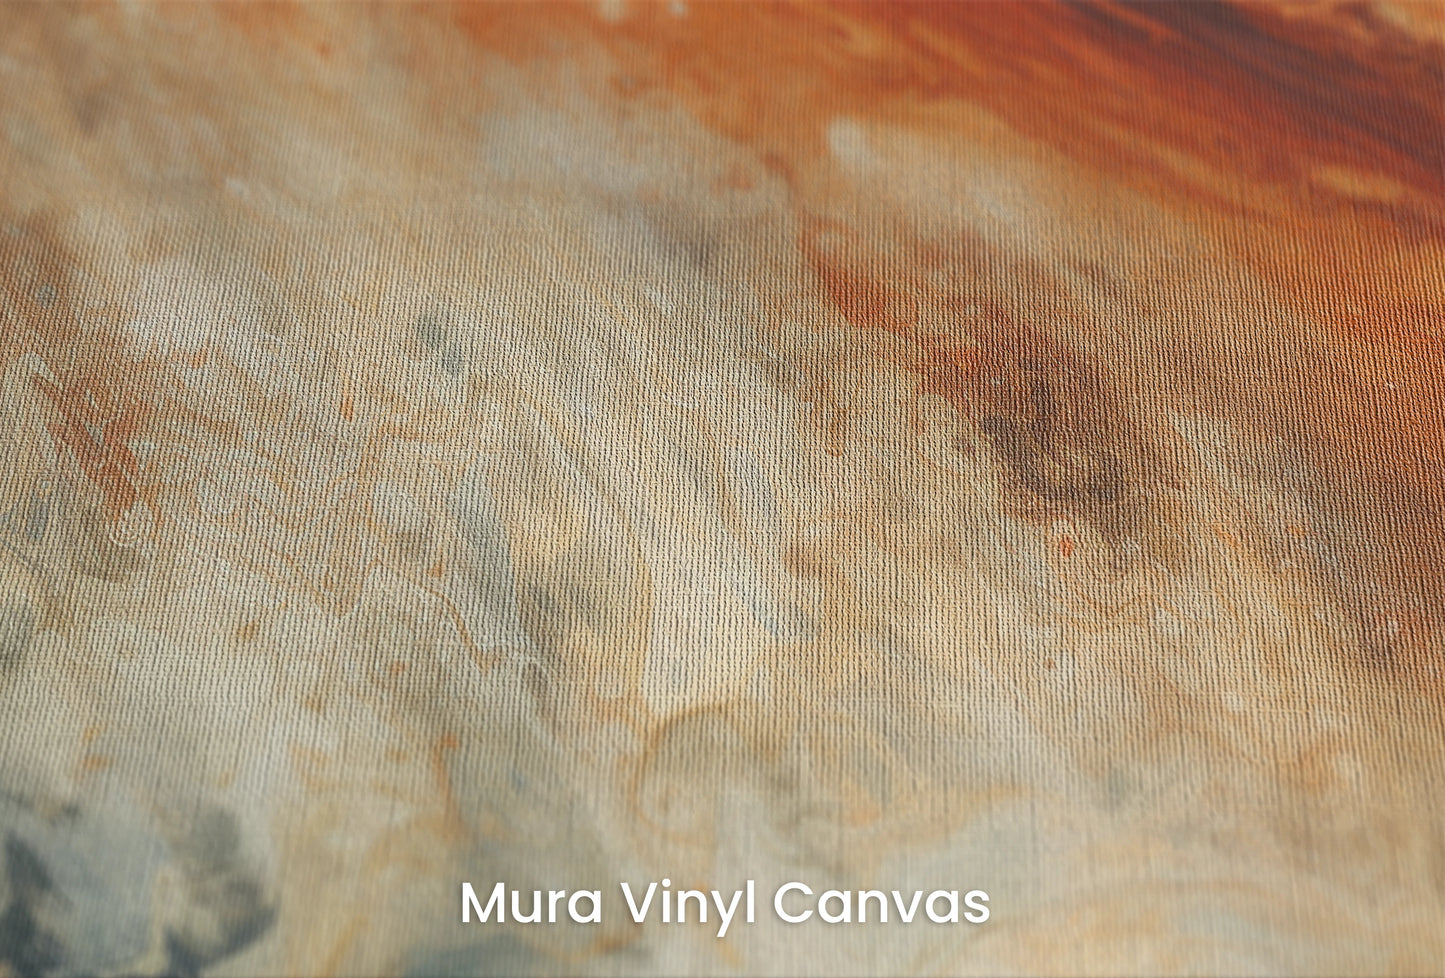 Zbliżenie na artystyczną fototapetę o nazwie Jupiter's Storm na podłożu Mura Vinyl Canvas - faktura naturalnego płótna.